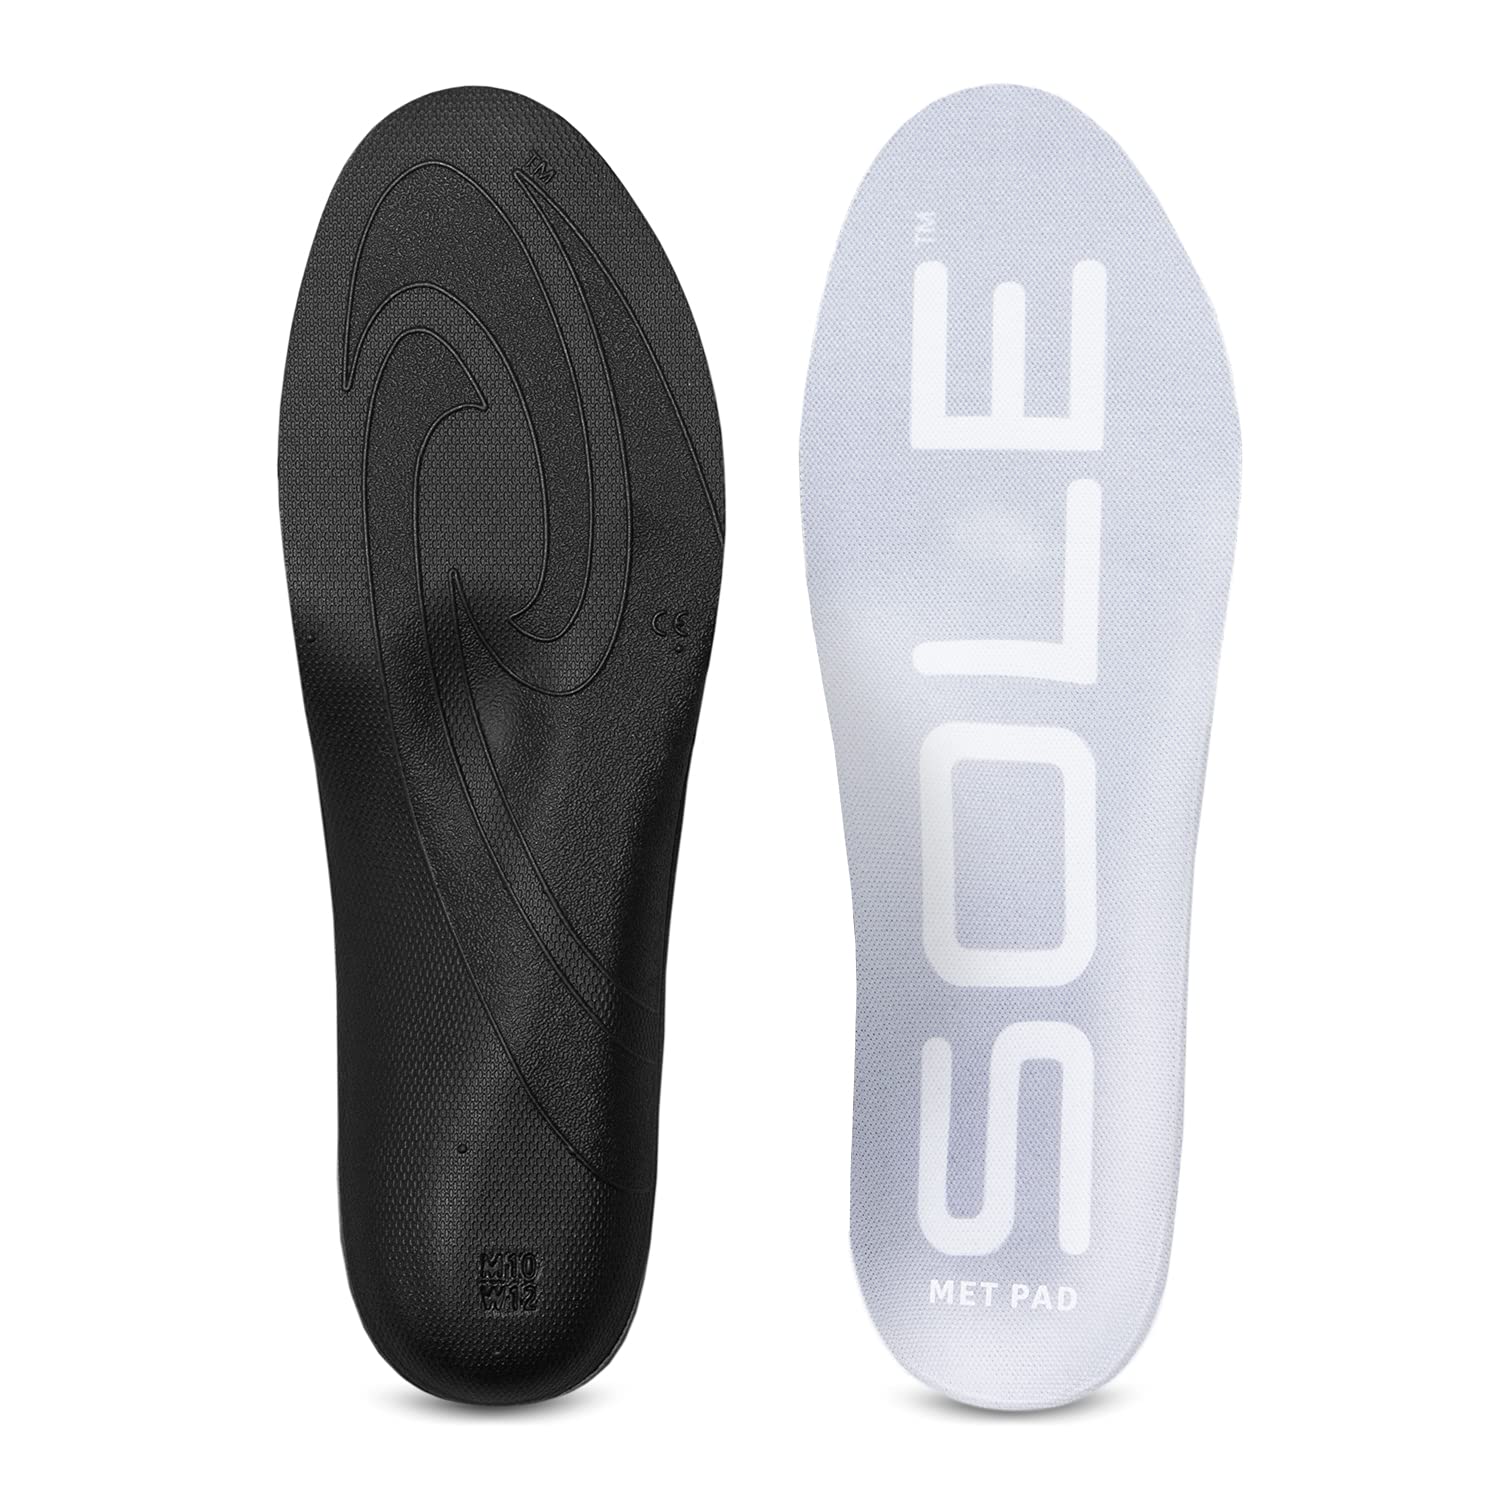 SOLE Performance Thick Orthopädische Kork-Stiefeleinlagen – Plantarfasziitis Relief Arch Support Einlegesohlen – mehrere Größen, Grau, Mens Size 13 / Womens Size 15